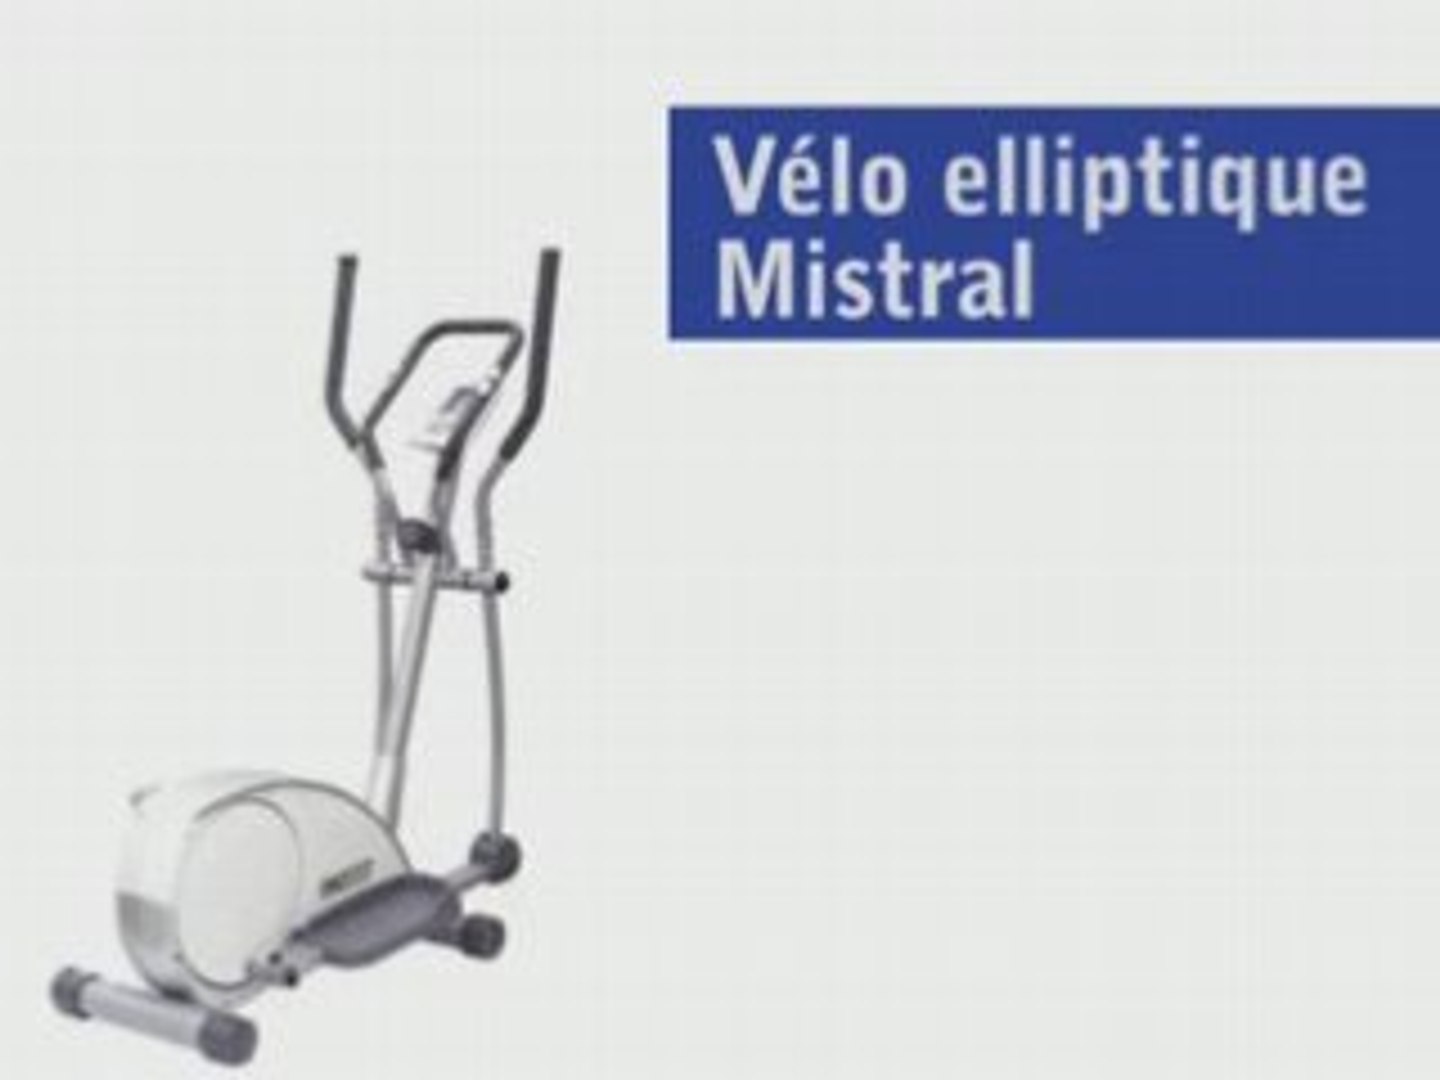 Care Vélo Mistral - Elliptique chez NMmedical - Vidéo Dailymotion